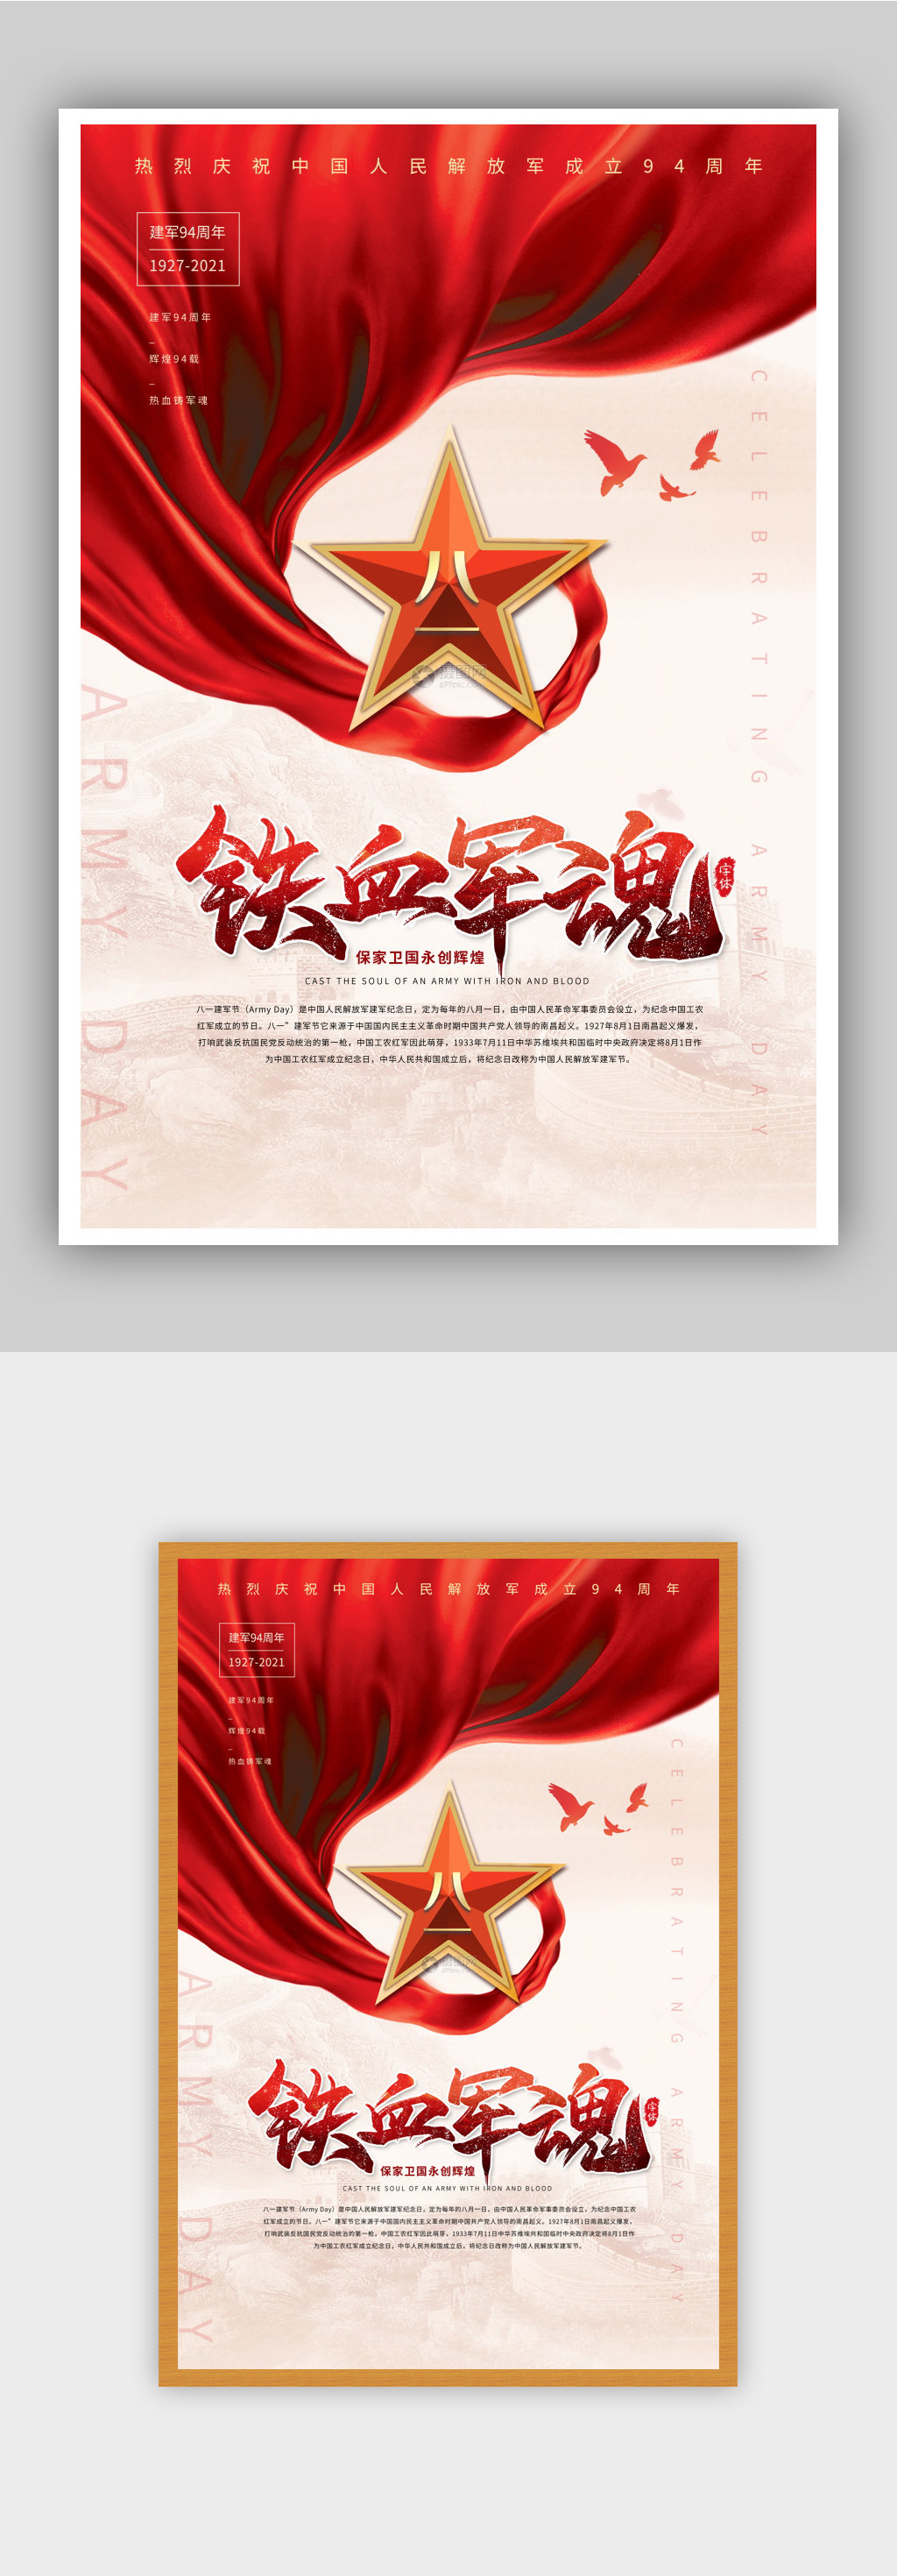 红色创意铁血军魂建军节宣传海报